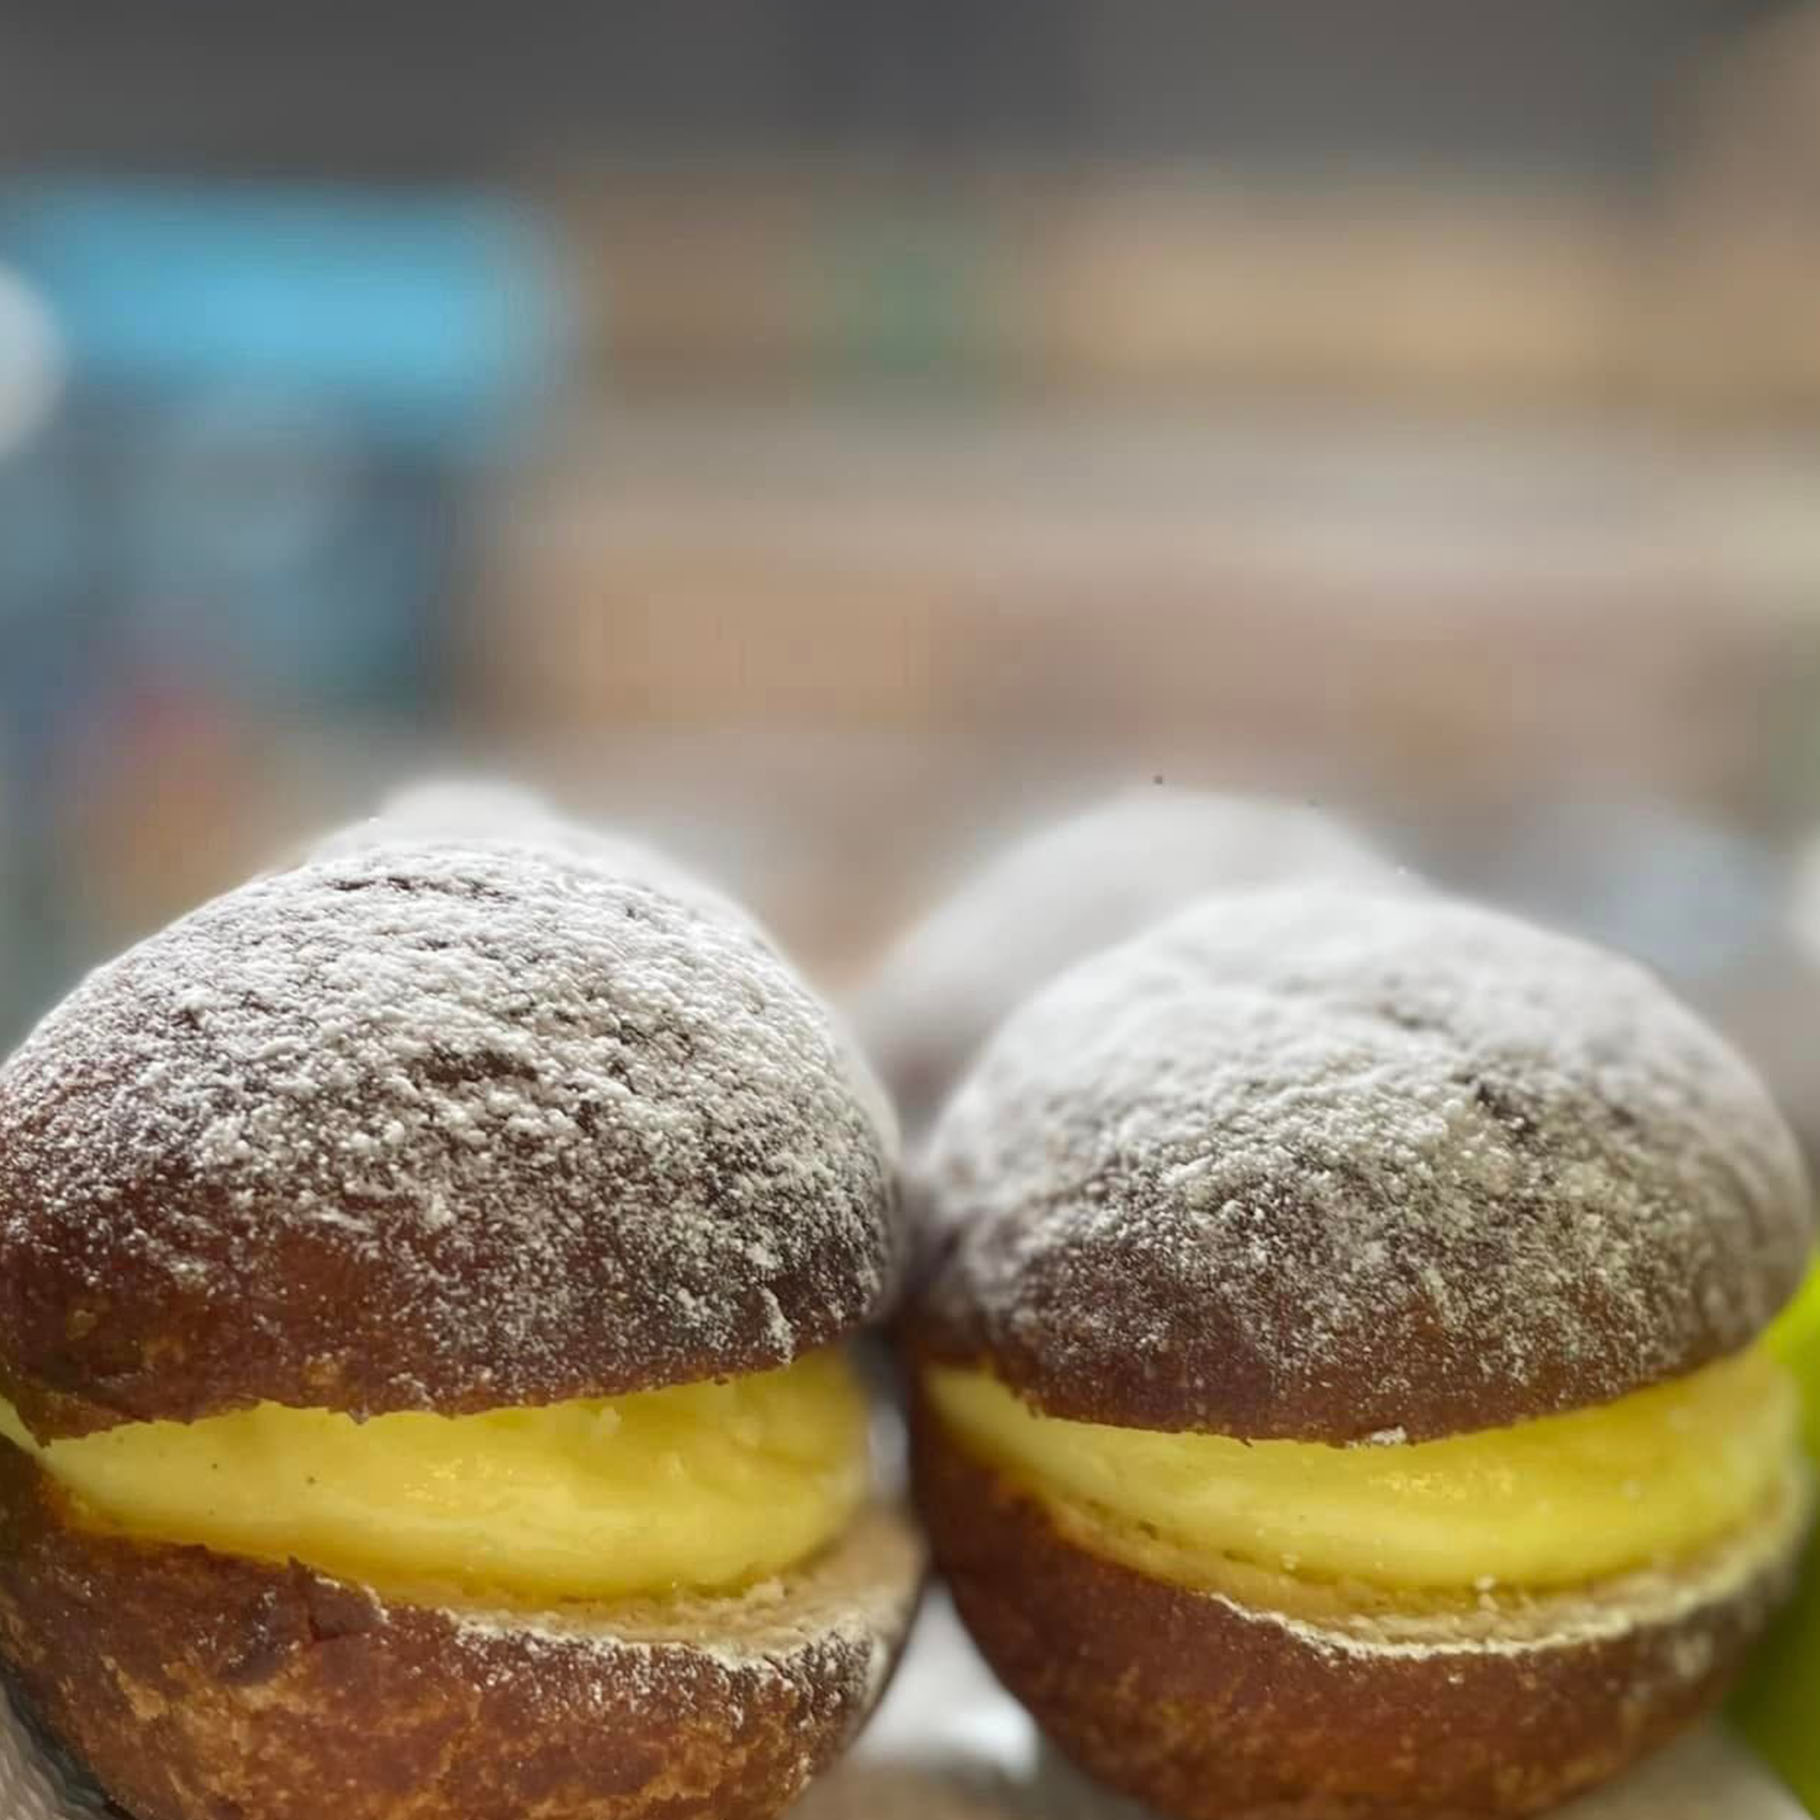 frank berlijnse bol - donut 1 - mobile